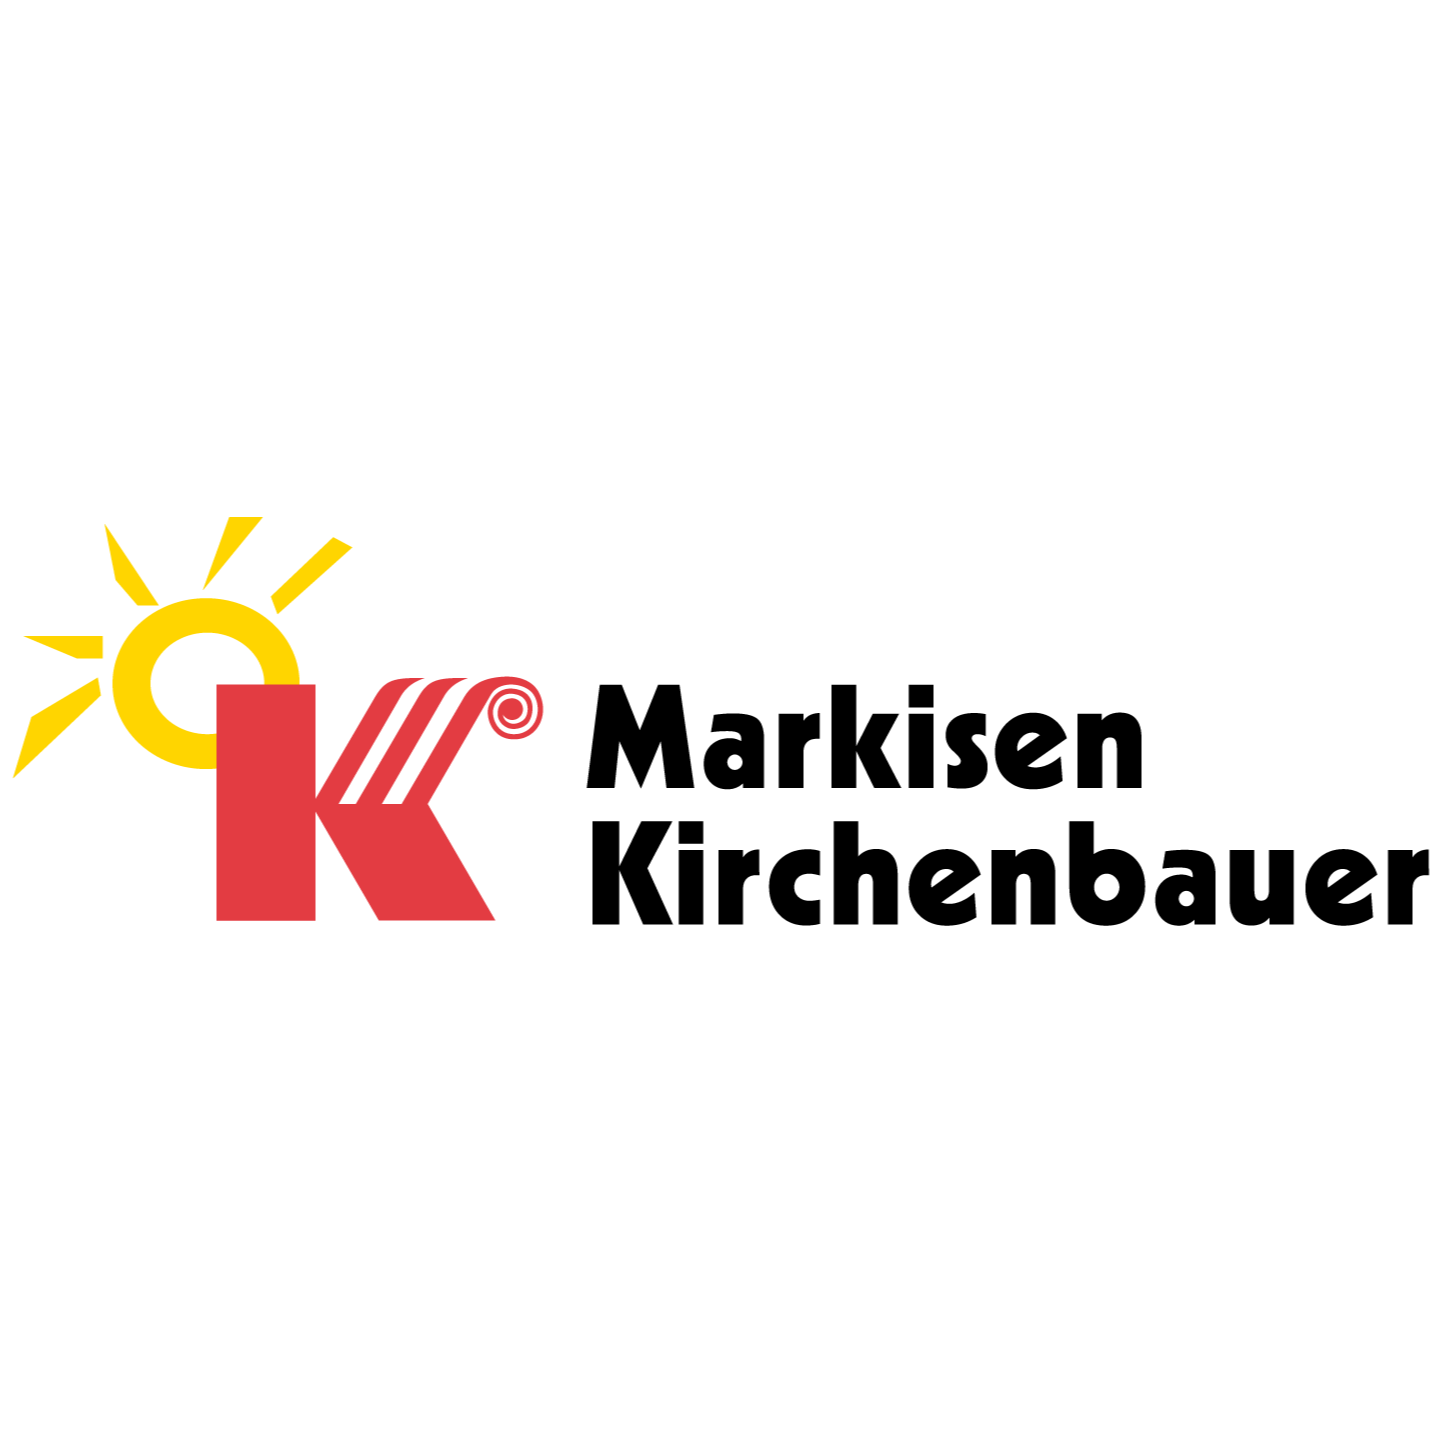 Markisen Kirchenbauer in Karlsruhe - Logo